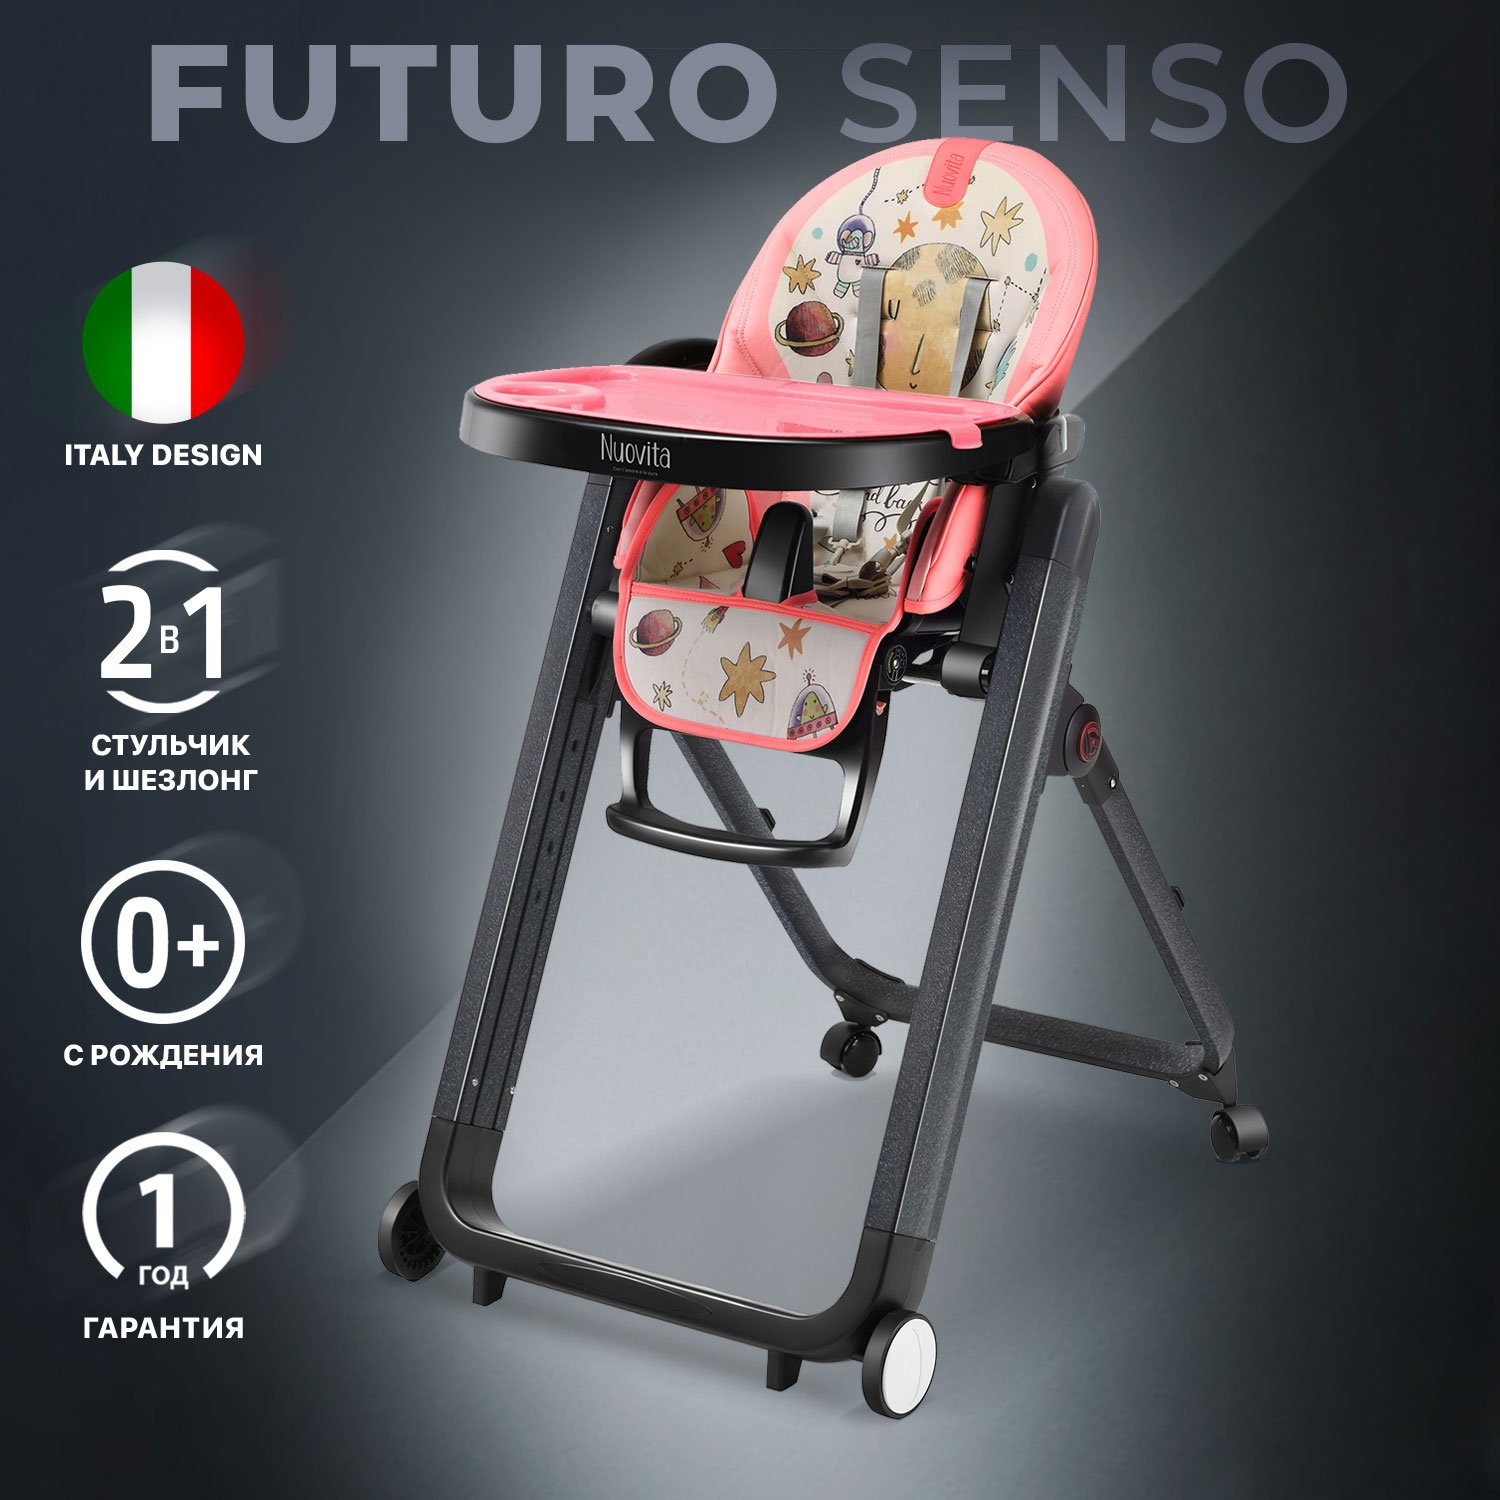 Стульчик для кормления Nuovita Futuro Senso Nero (Cosmo rosa/Розовый космос) стульчик для кормления nuovita grande nero